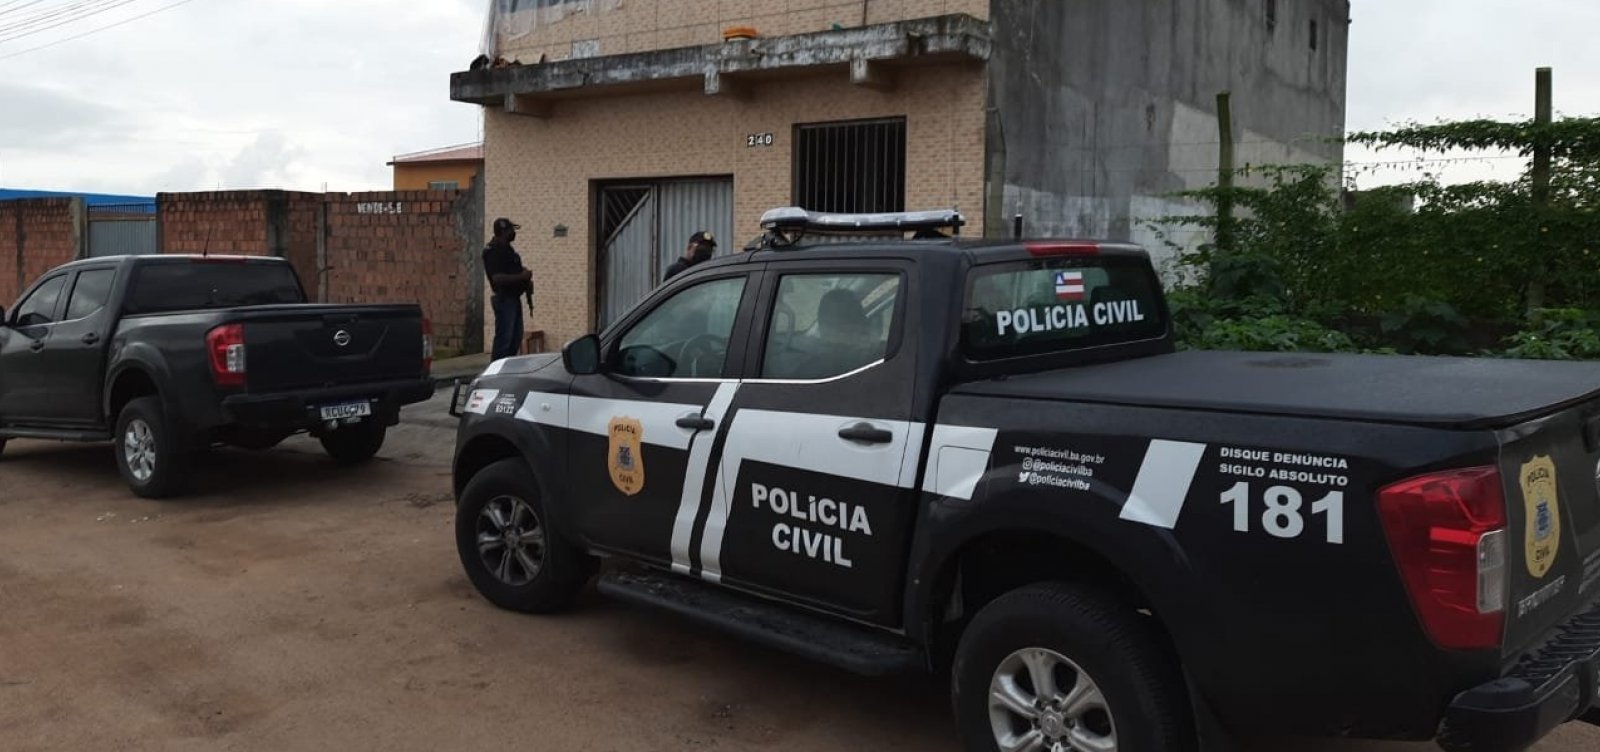 Polícia Civil cumpre mandados de prisão e busca e apreensão em todo o estado